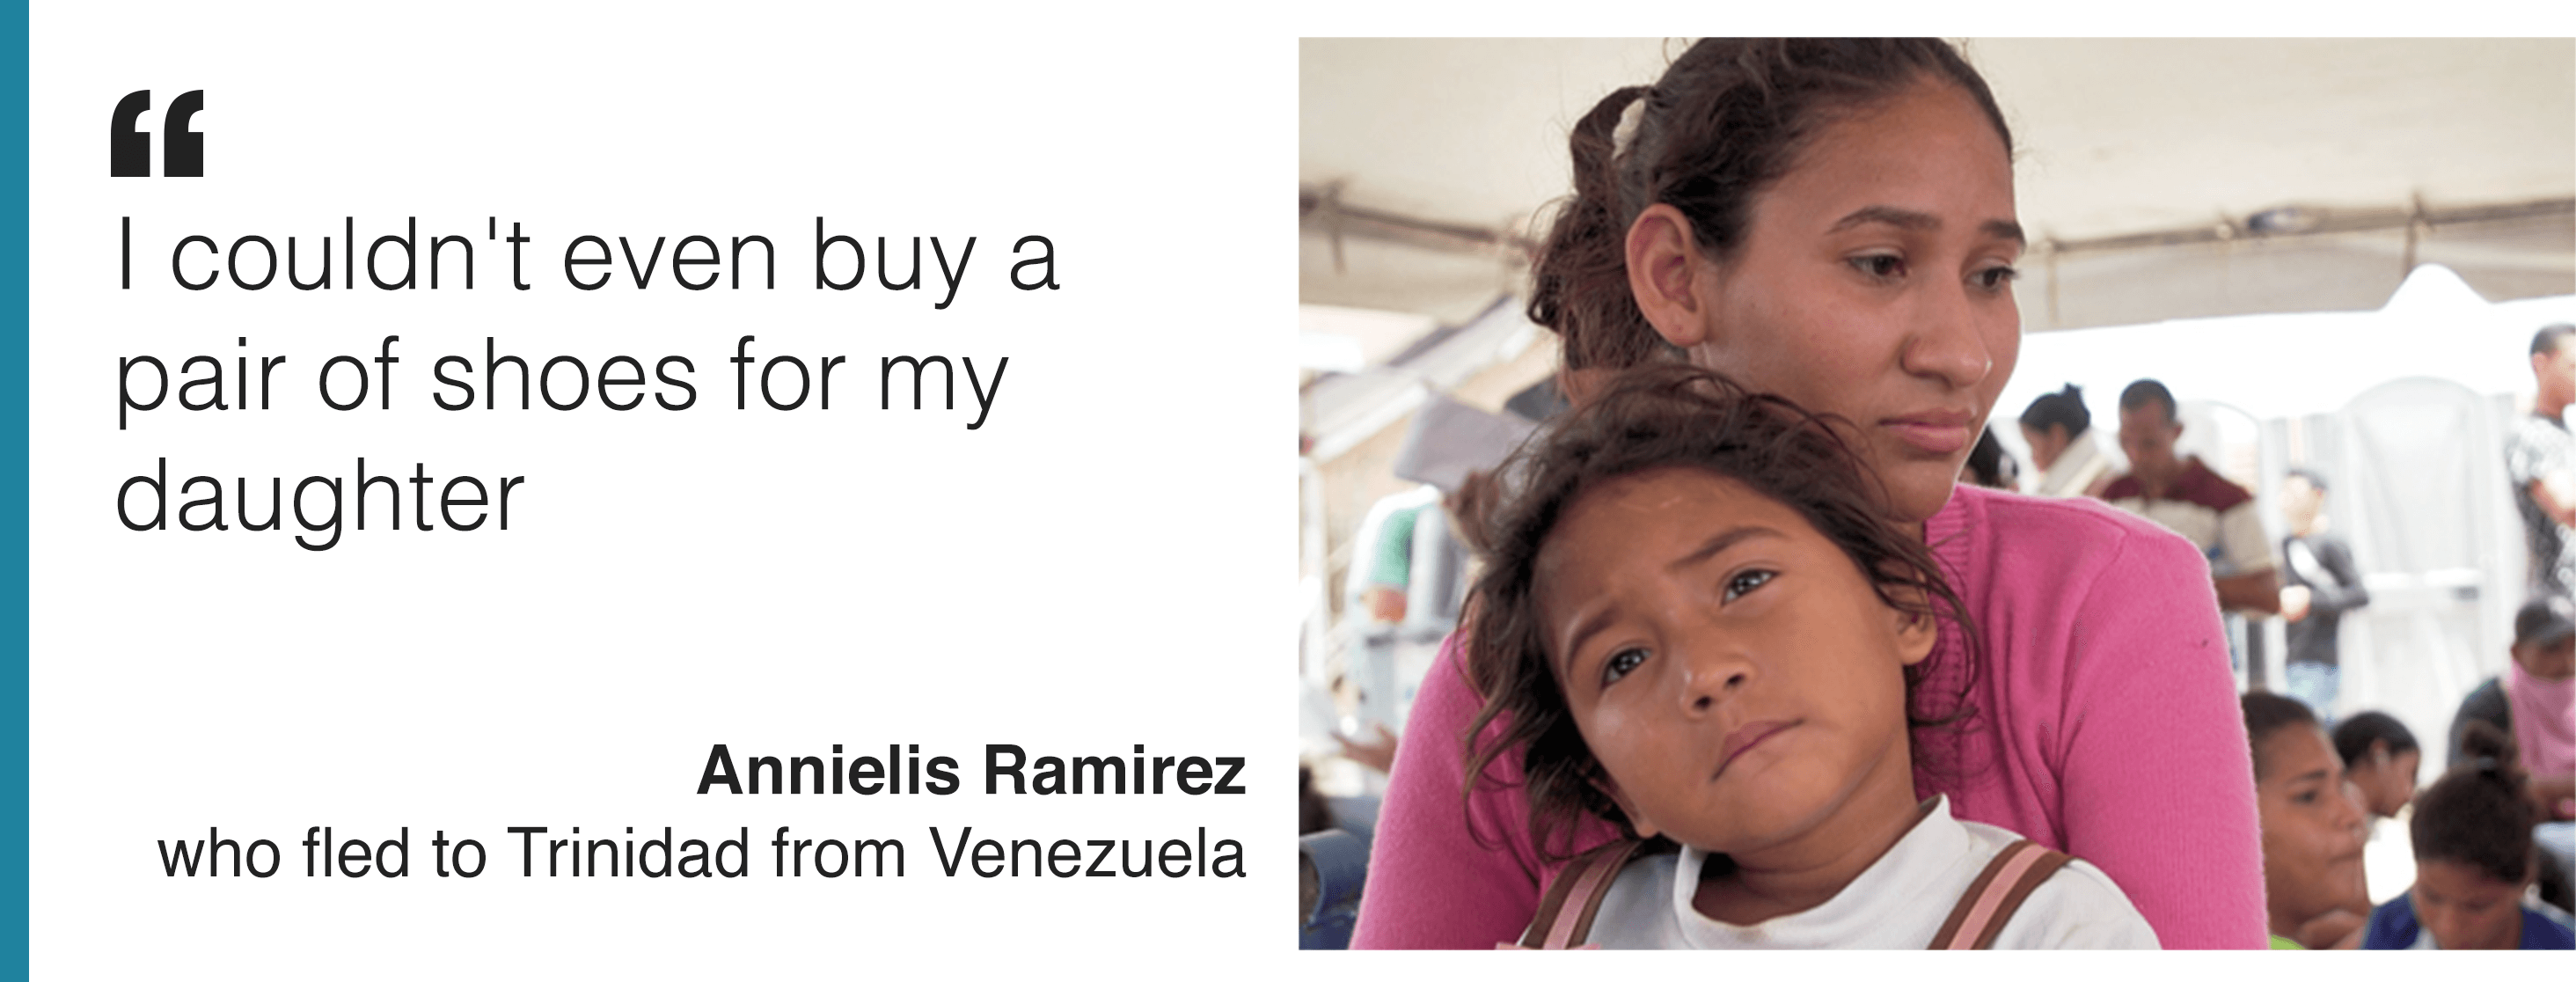 Изображение и цитата Анниелиса Рамиреса, который входит в число тысяч венесуэльцев, ищущих лучшей жизни на Тринидаде. Она говорит: «Я действительно могу сказать, что Уганда на данный момент является нашим домом».